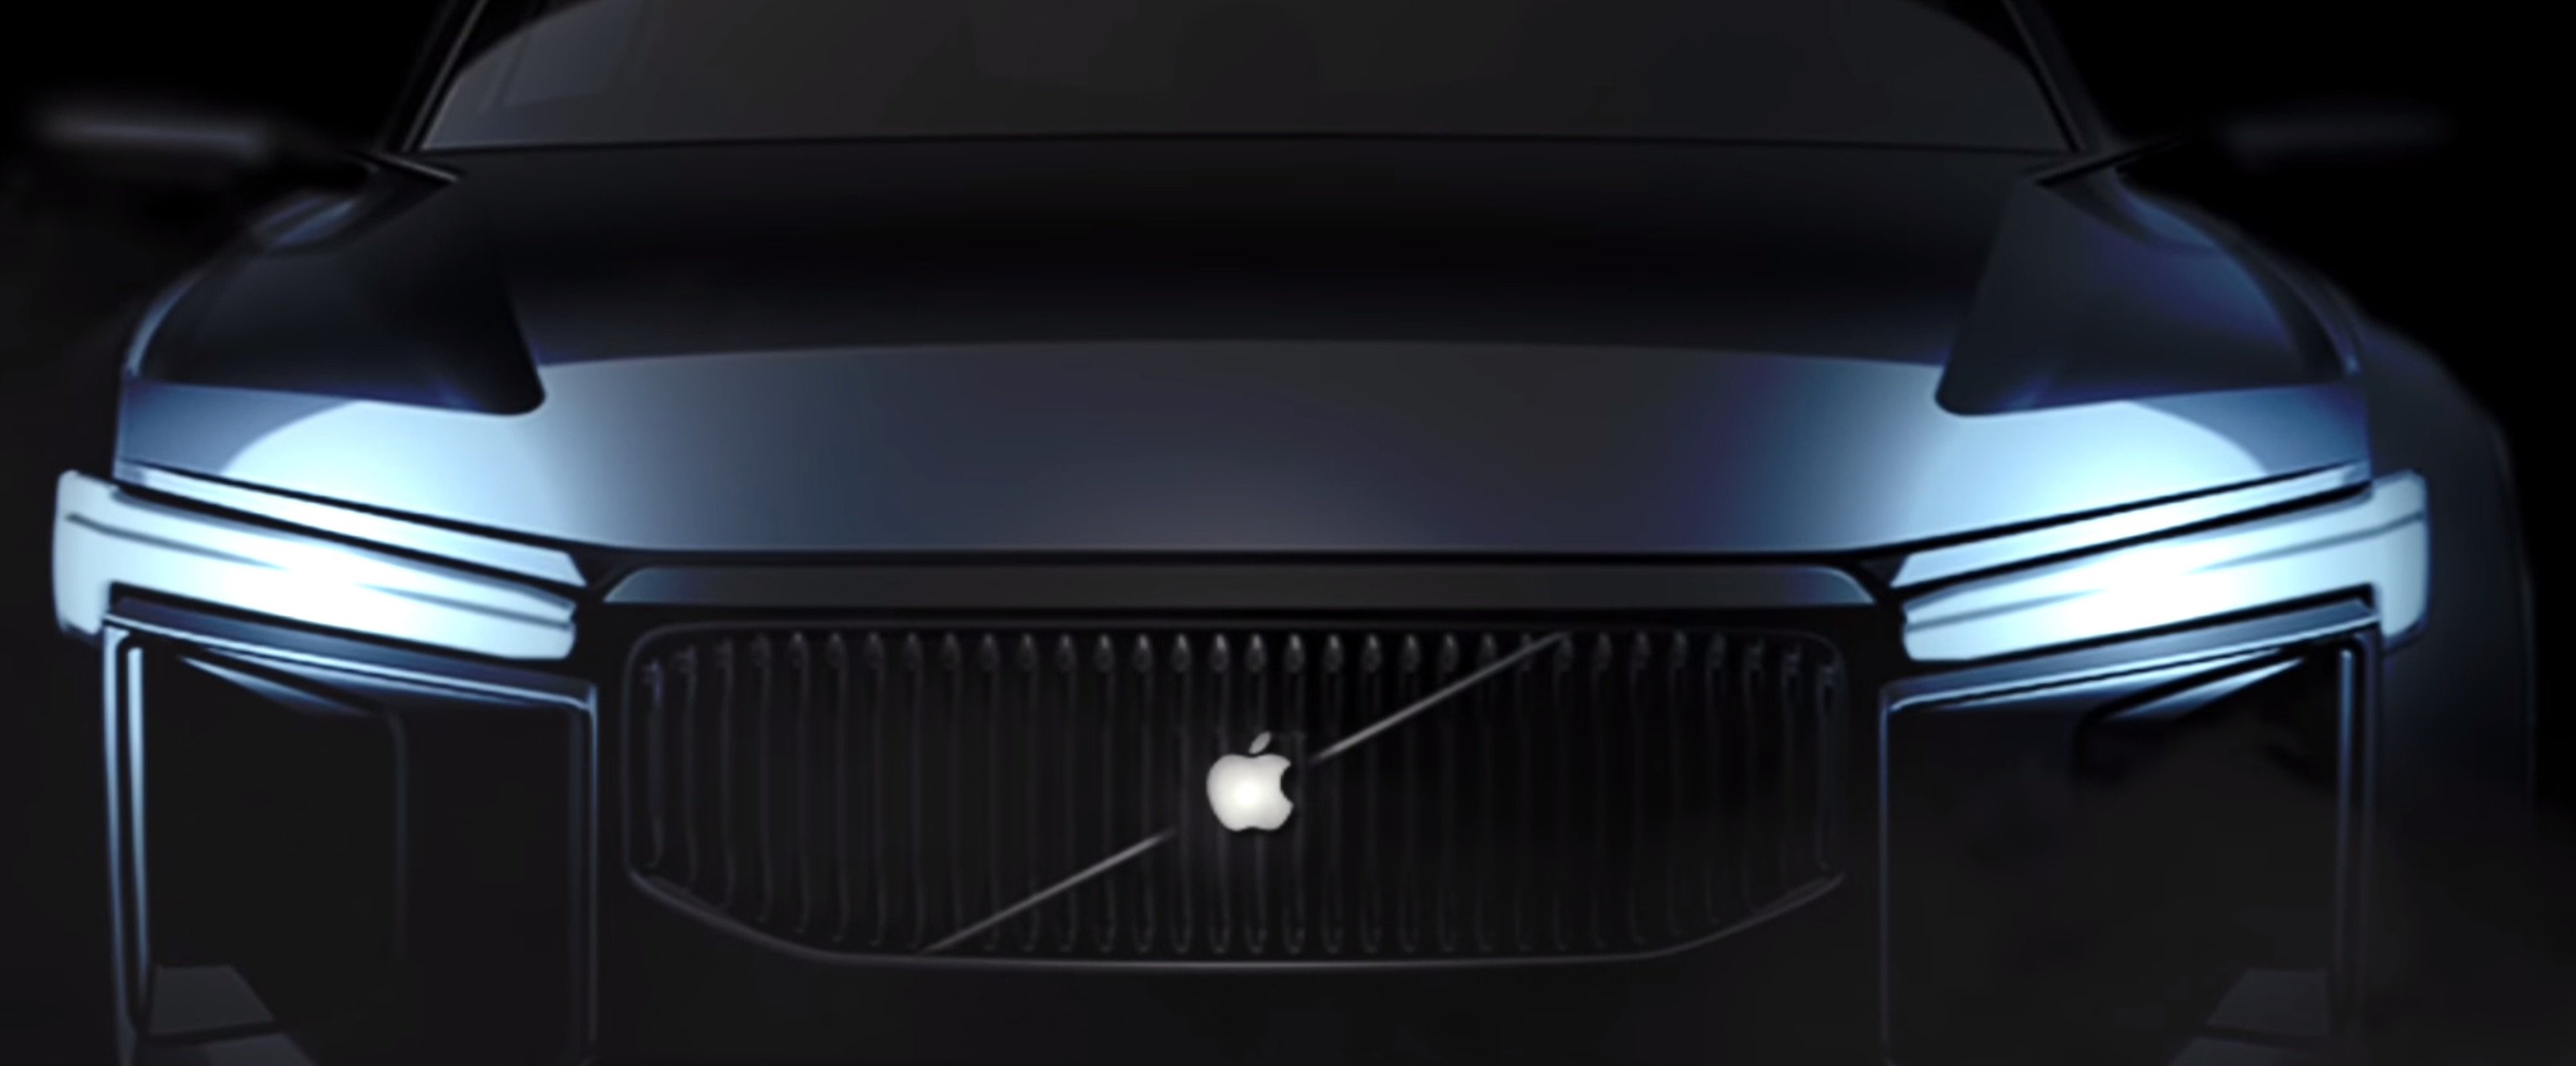 Apple Car - Mehr als nur ein Auto 2020 Concept-Video 8